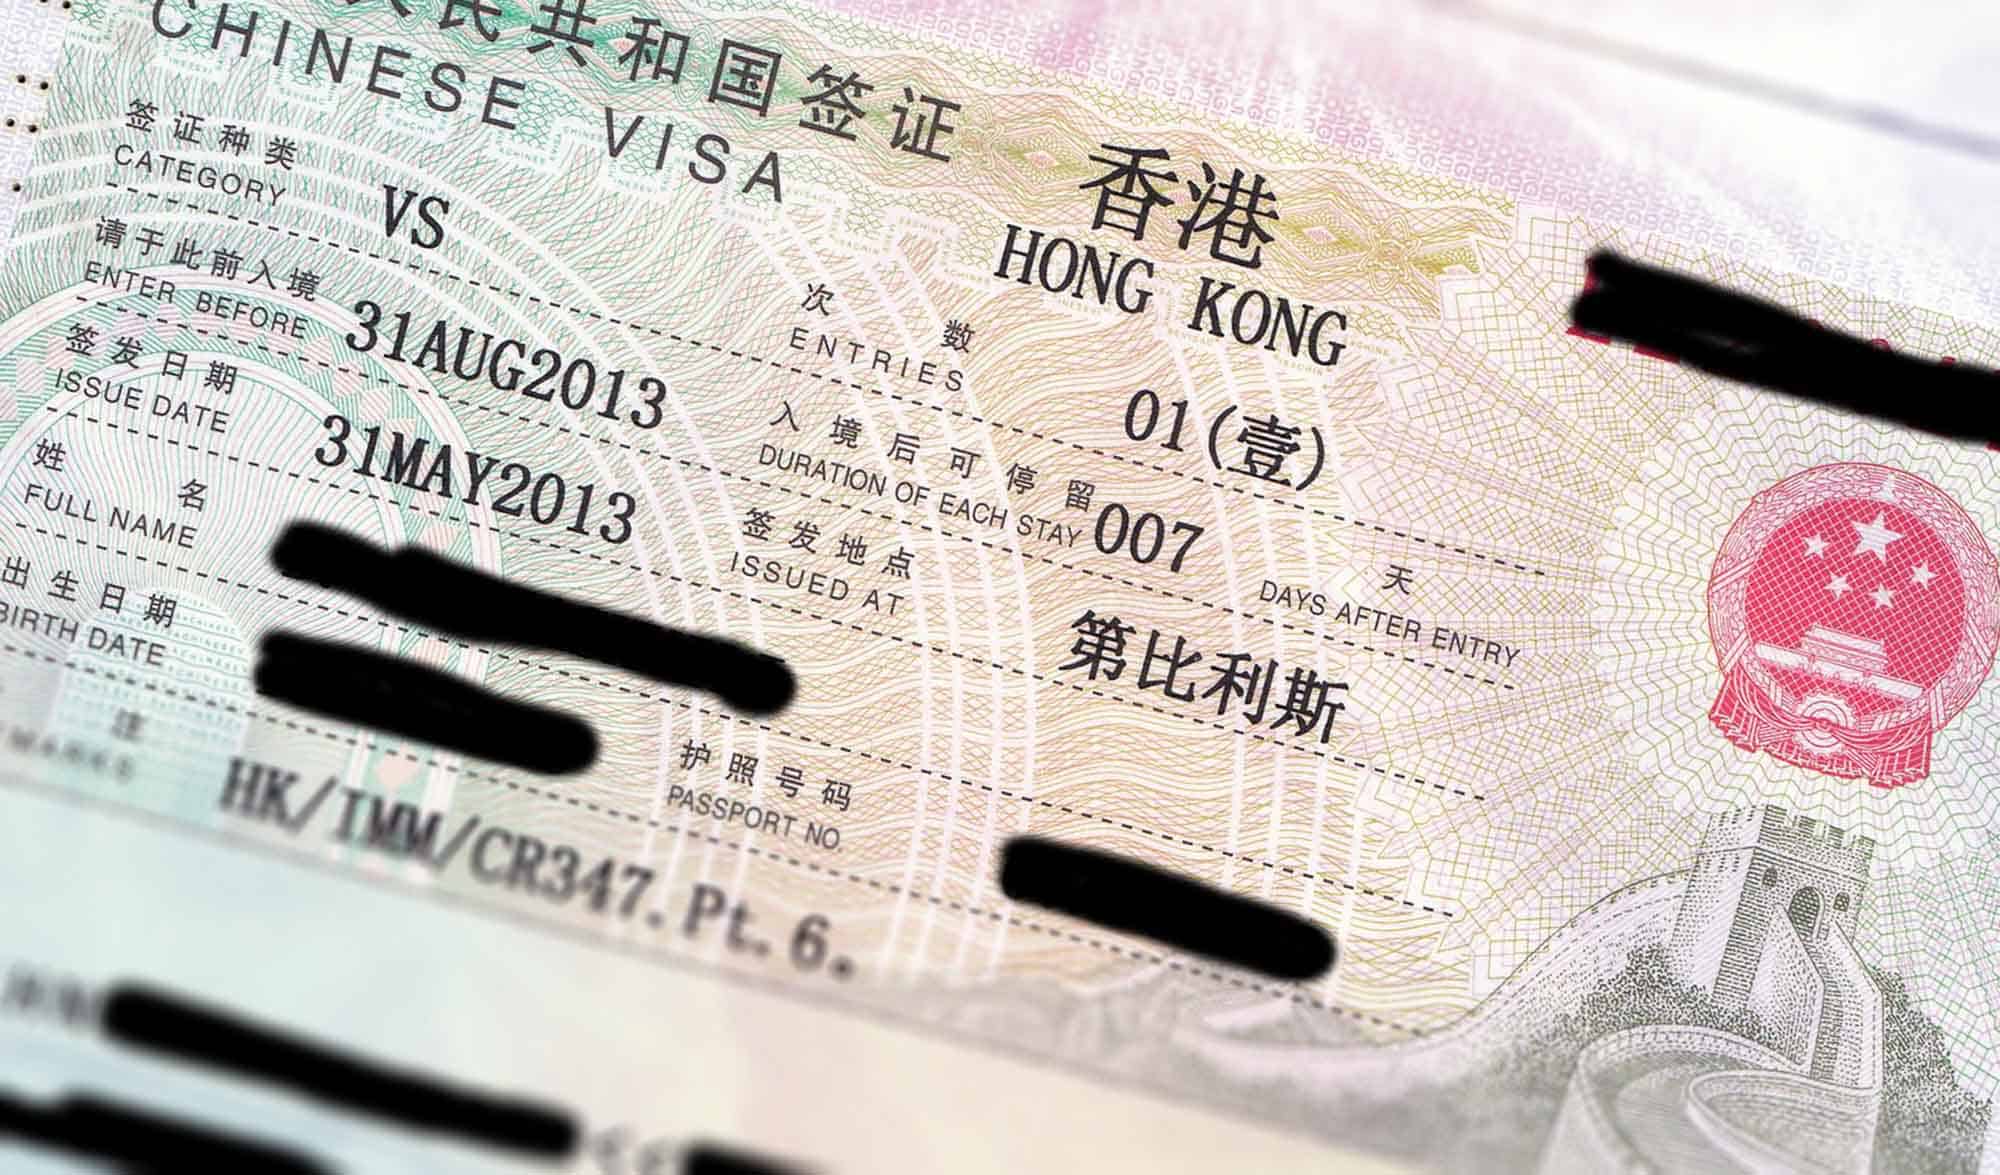 Hong Kong Tourist Visa Image